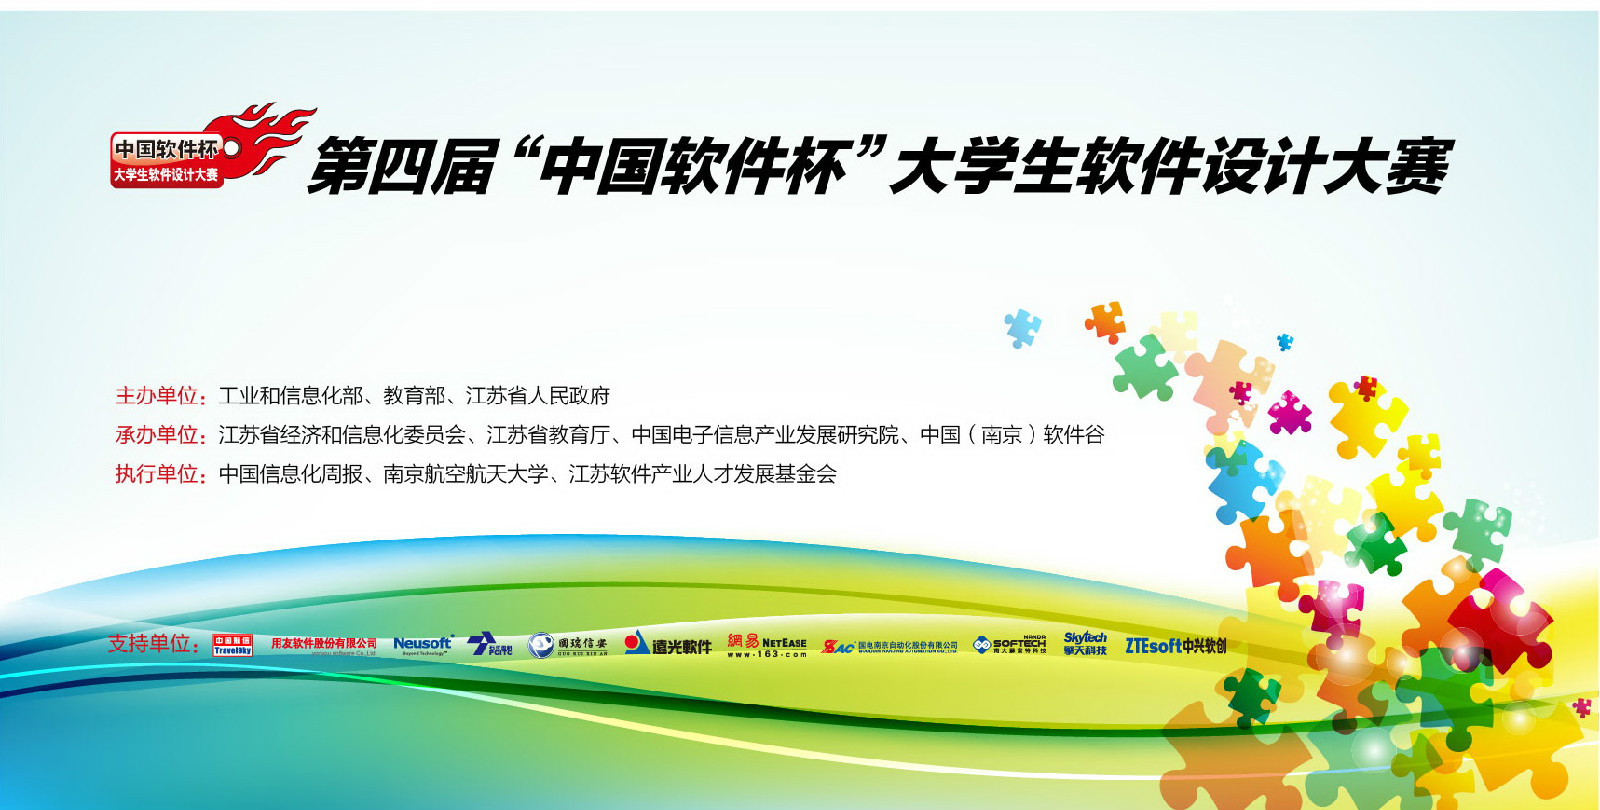 中國軟體杯大學生軟體設計大賽